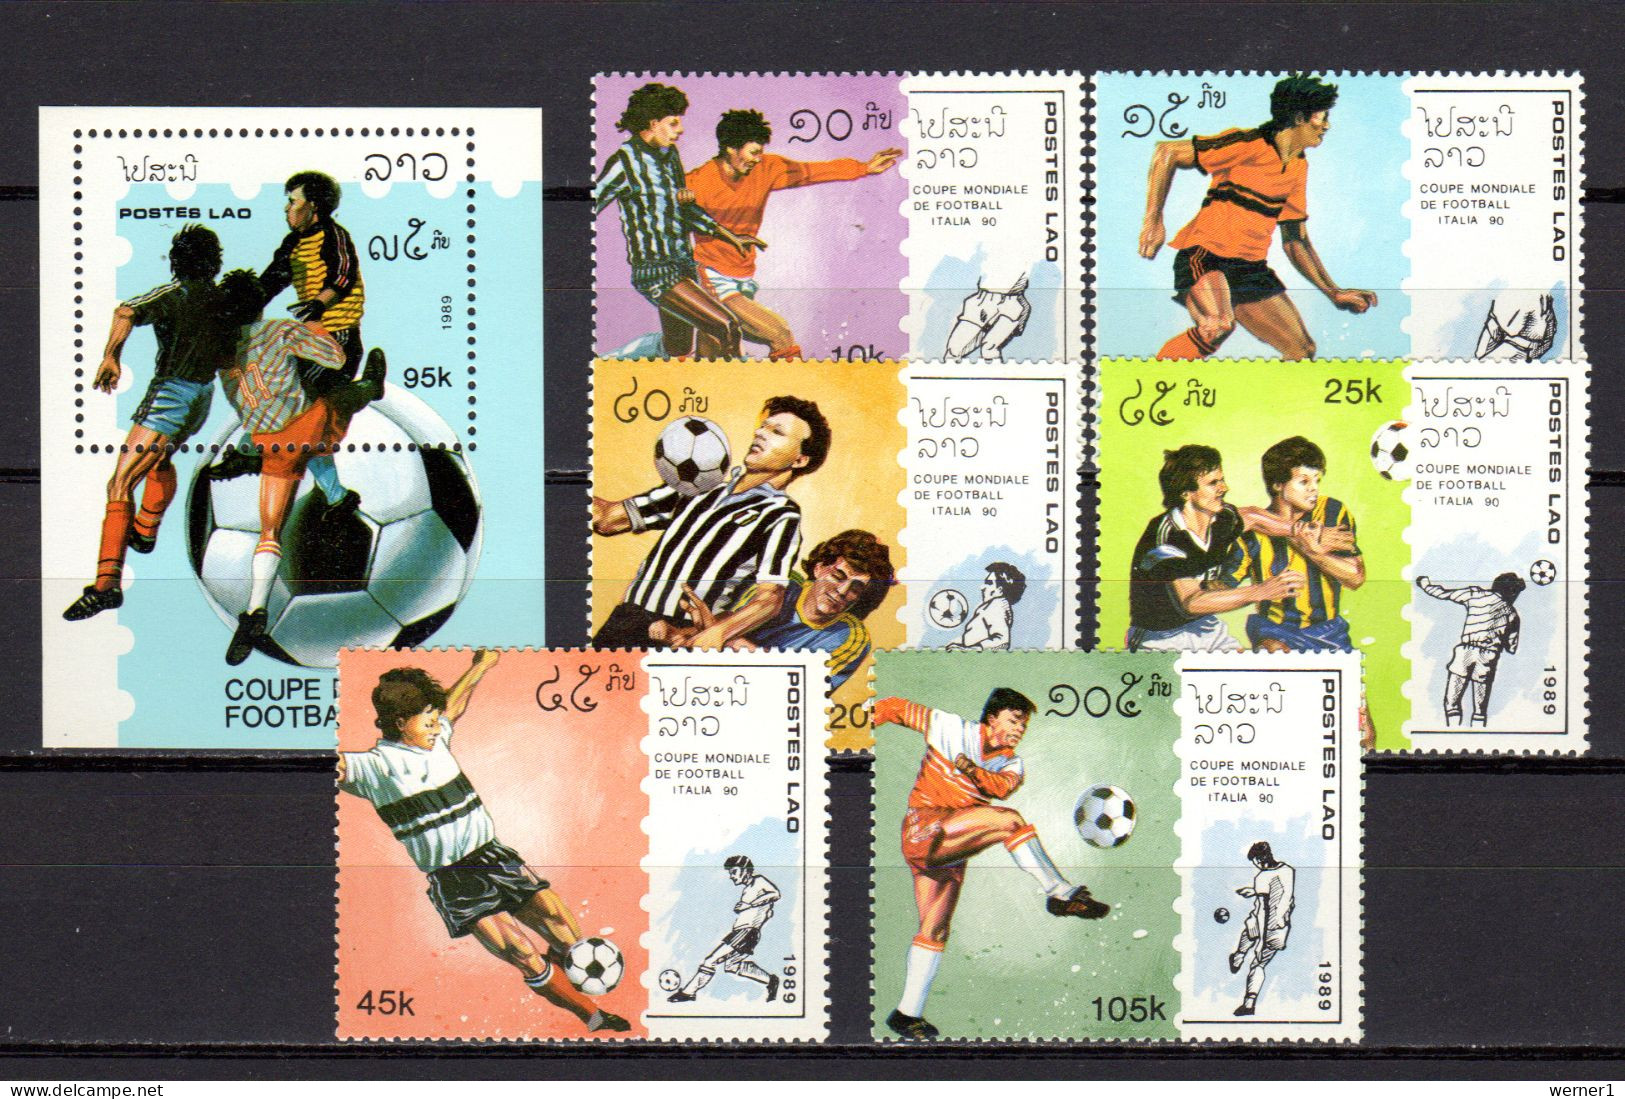 Laos 1989 Football Soccer World Cup Set Of 6 + S/s MNH - Ongebruikt